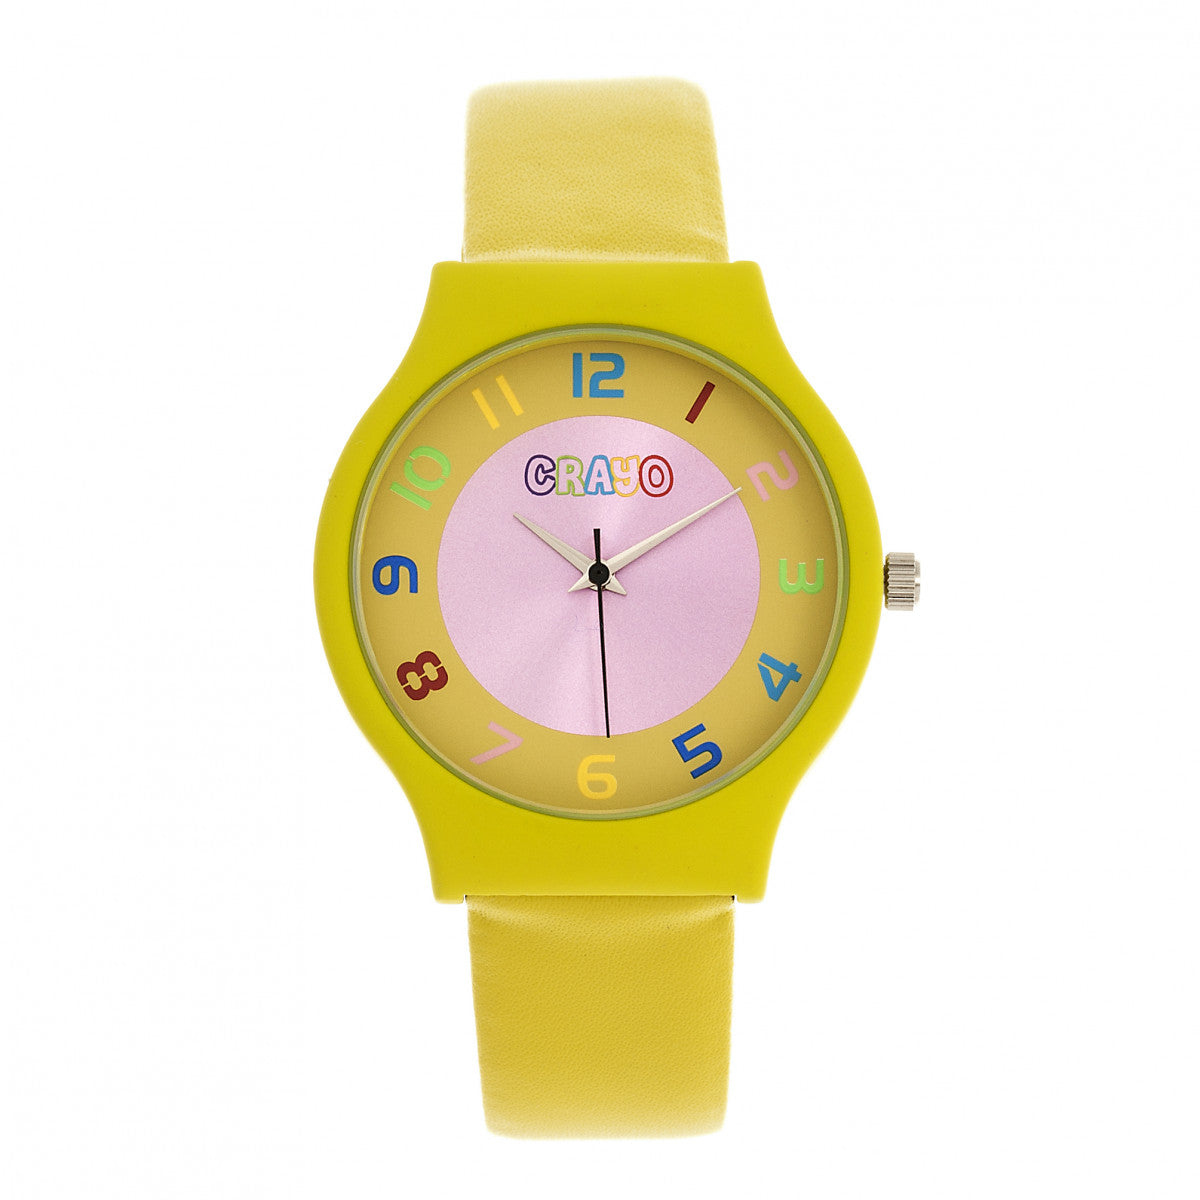 Crayo Jubilee Unisex Watch - Yellow - CRACR4604